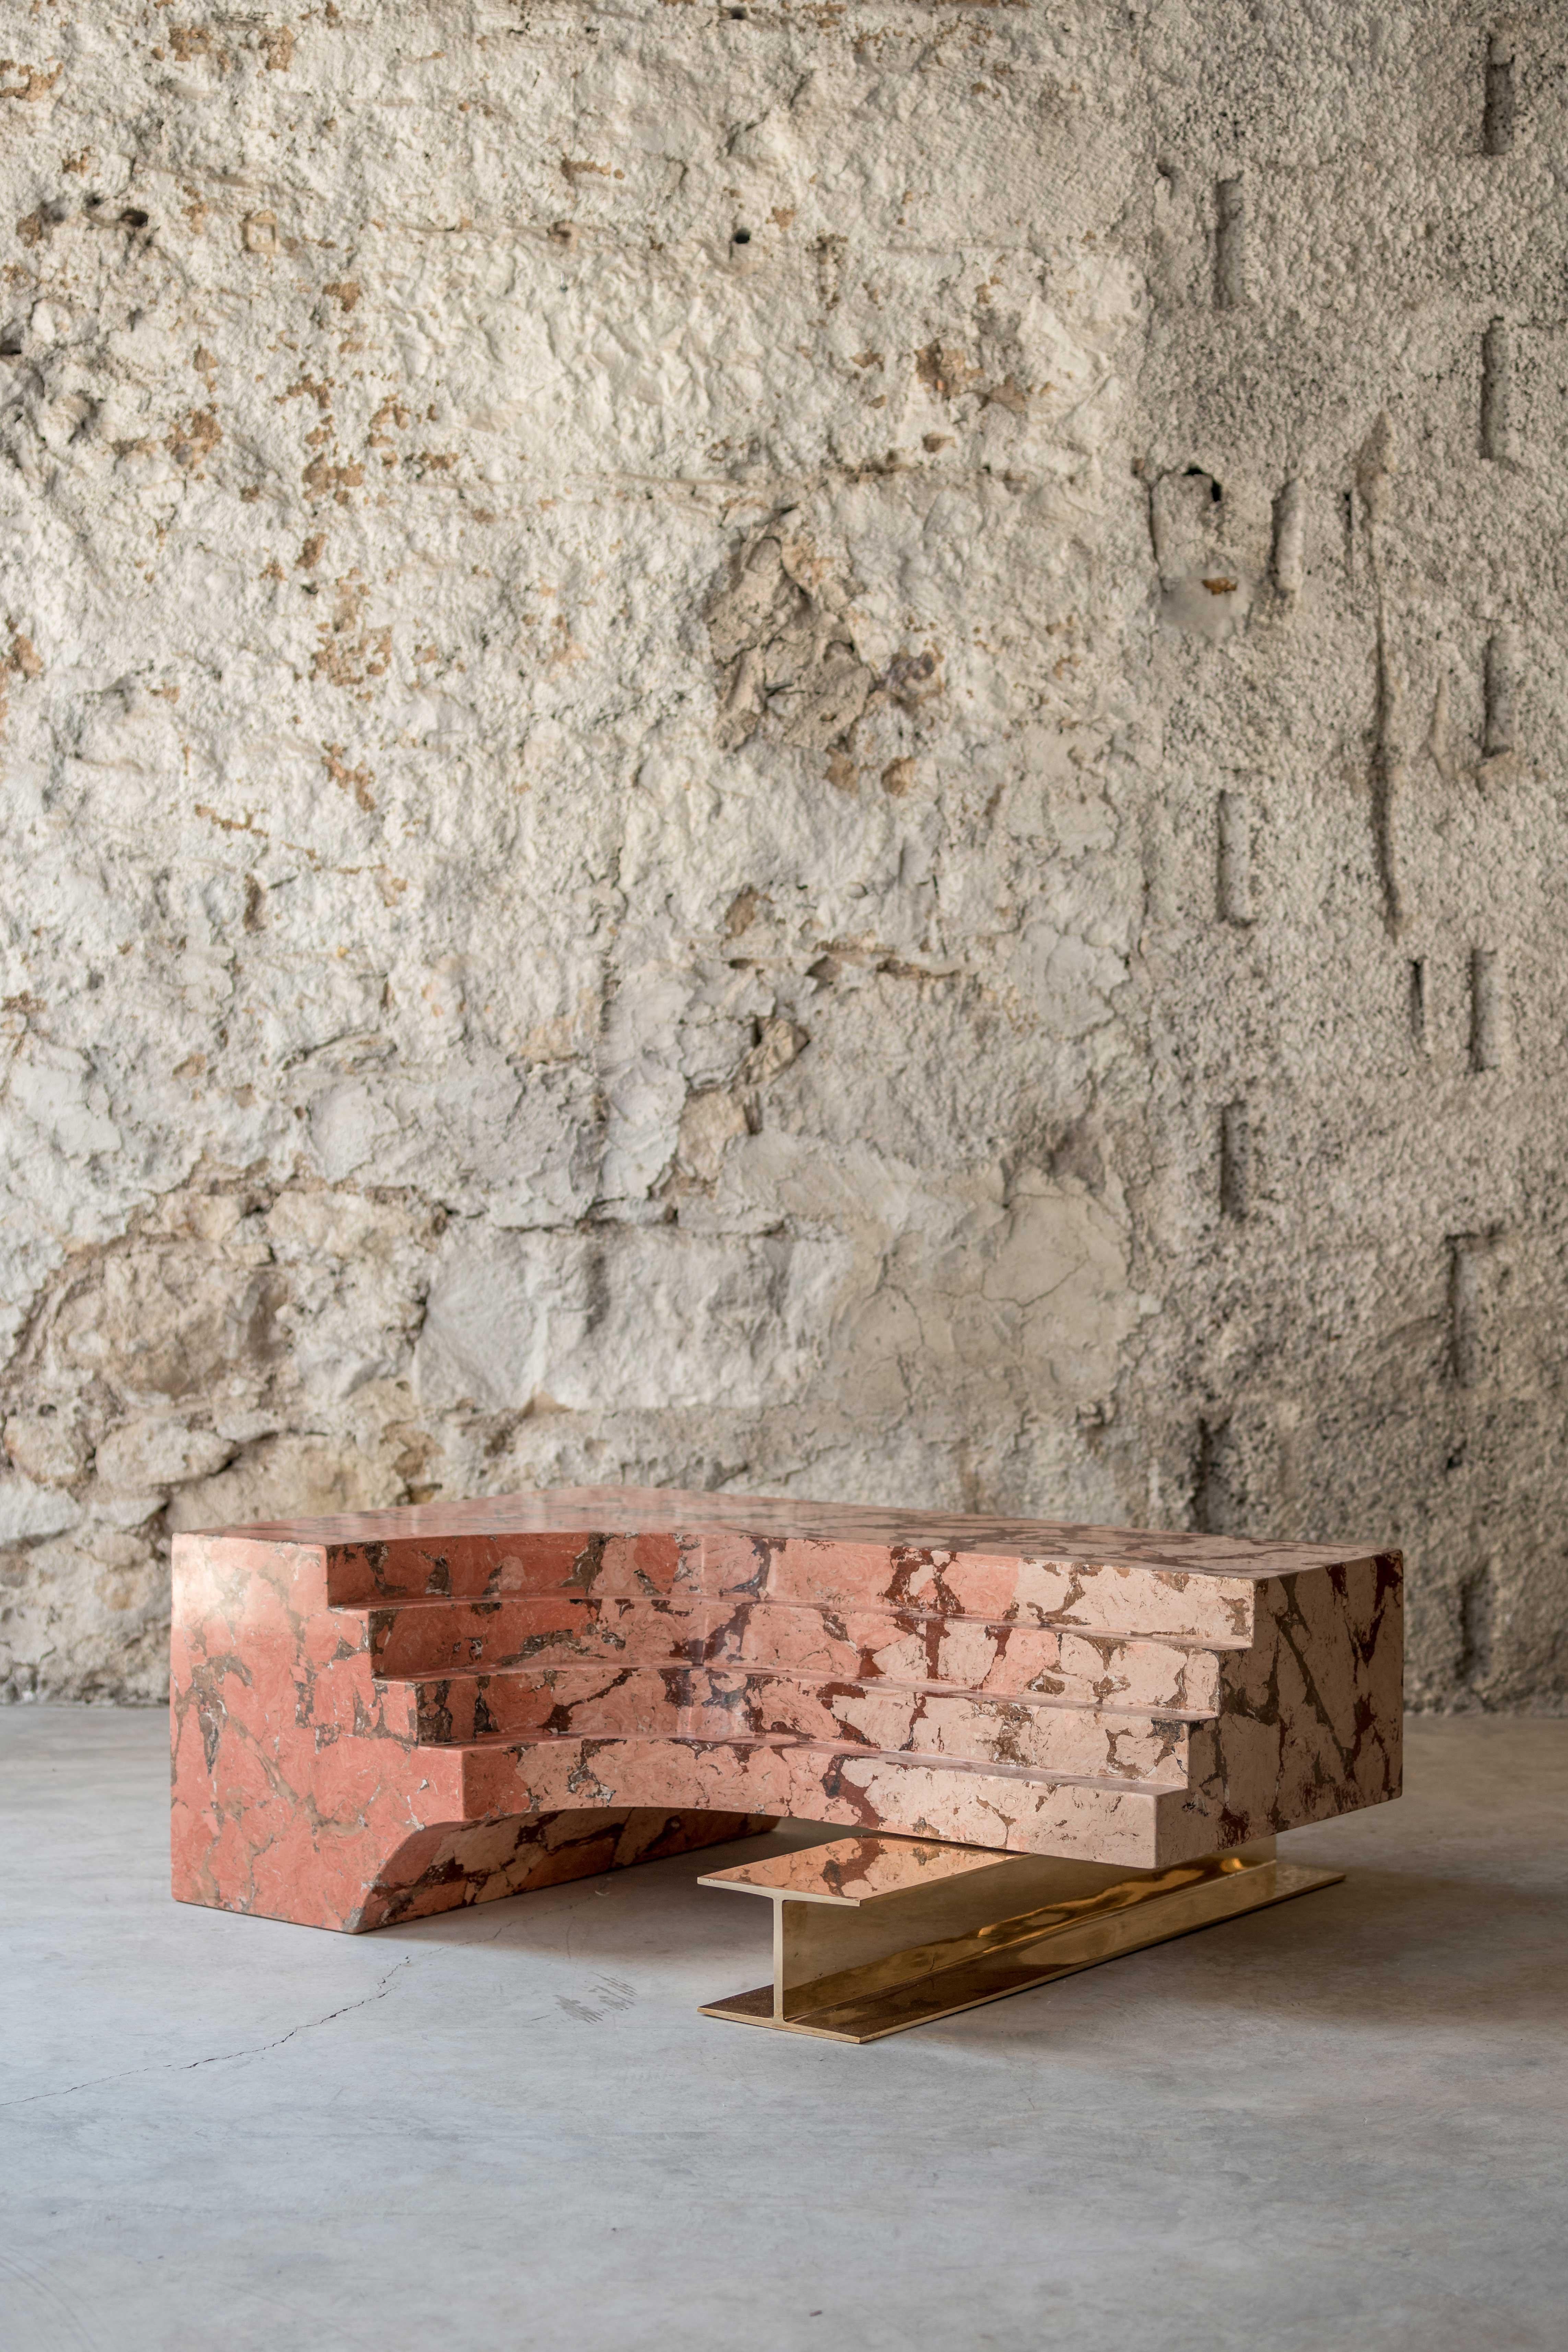 Ruins von Roberto Sironi ist eine Serie von Werken, die architektonische Fragmente aus verschiedenen historischen Epochen und großen archäologischen Stätten neu definieren und die Formen entsprechend neuer ästhetischer Darstellungen modellieren. Das